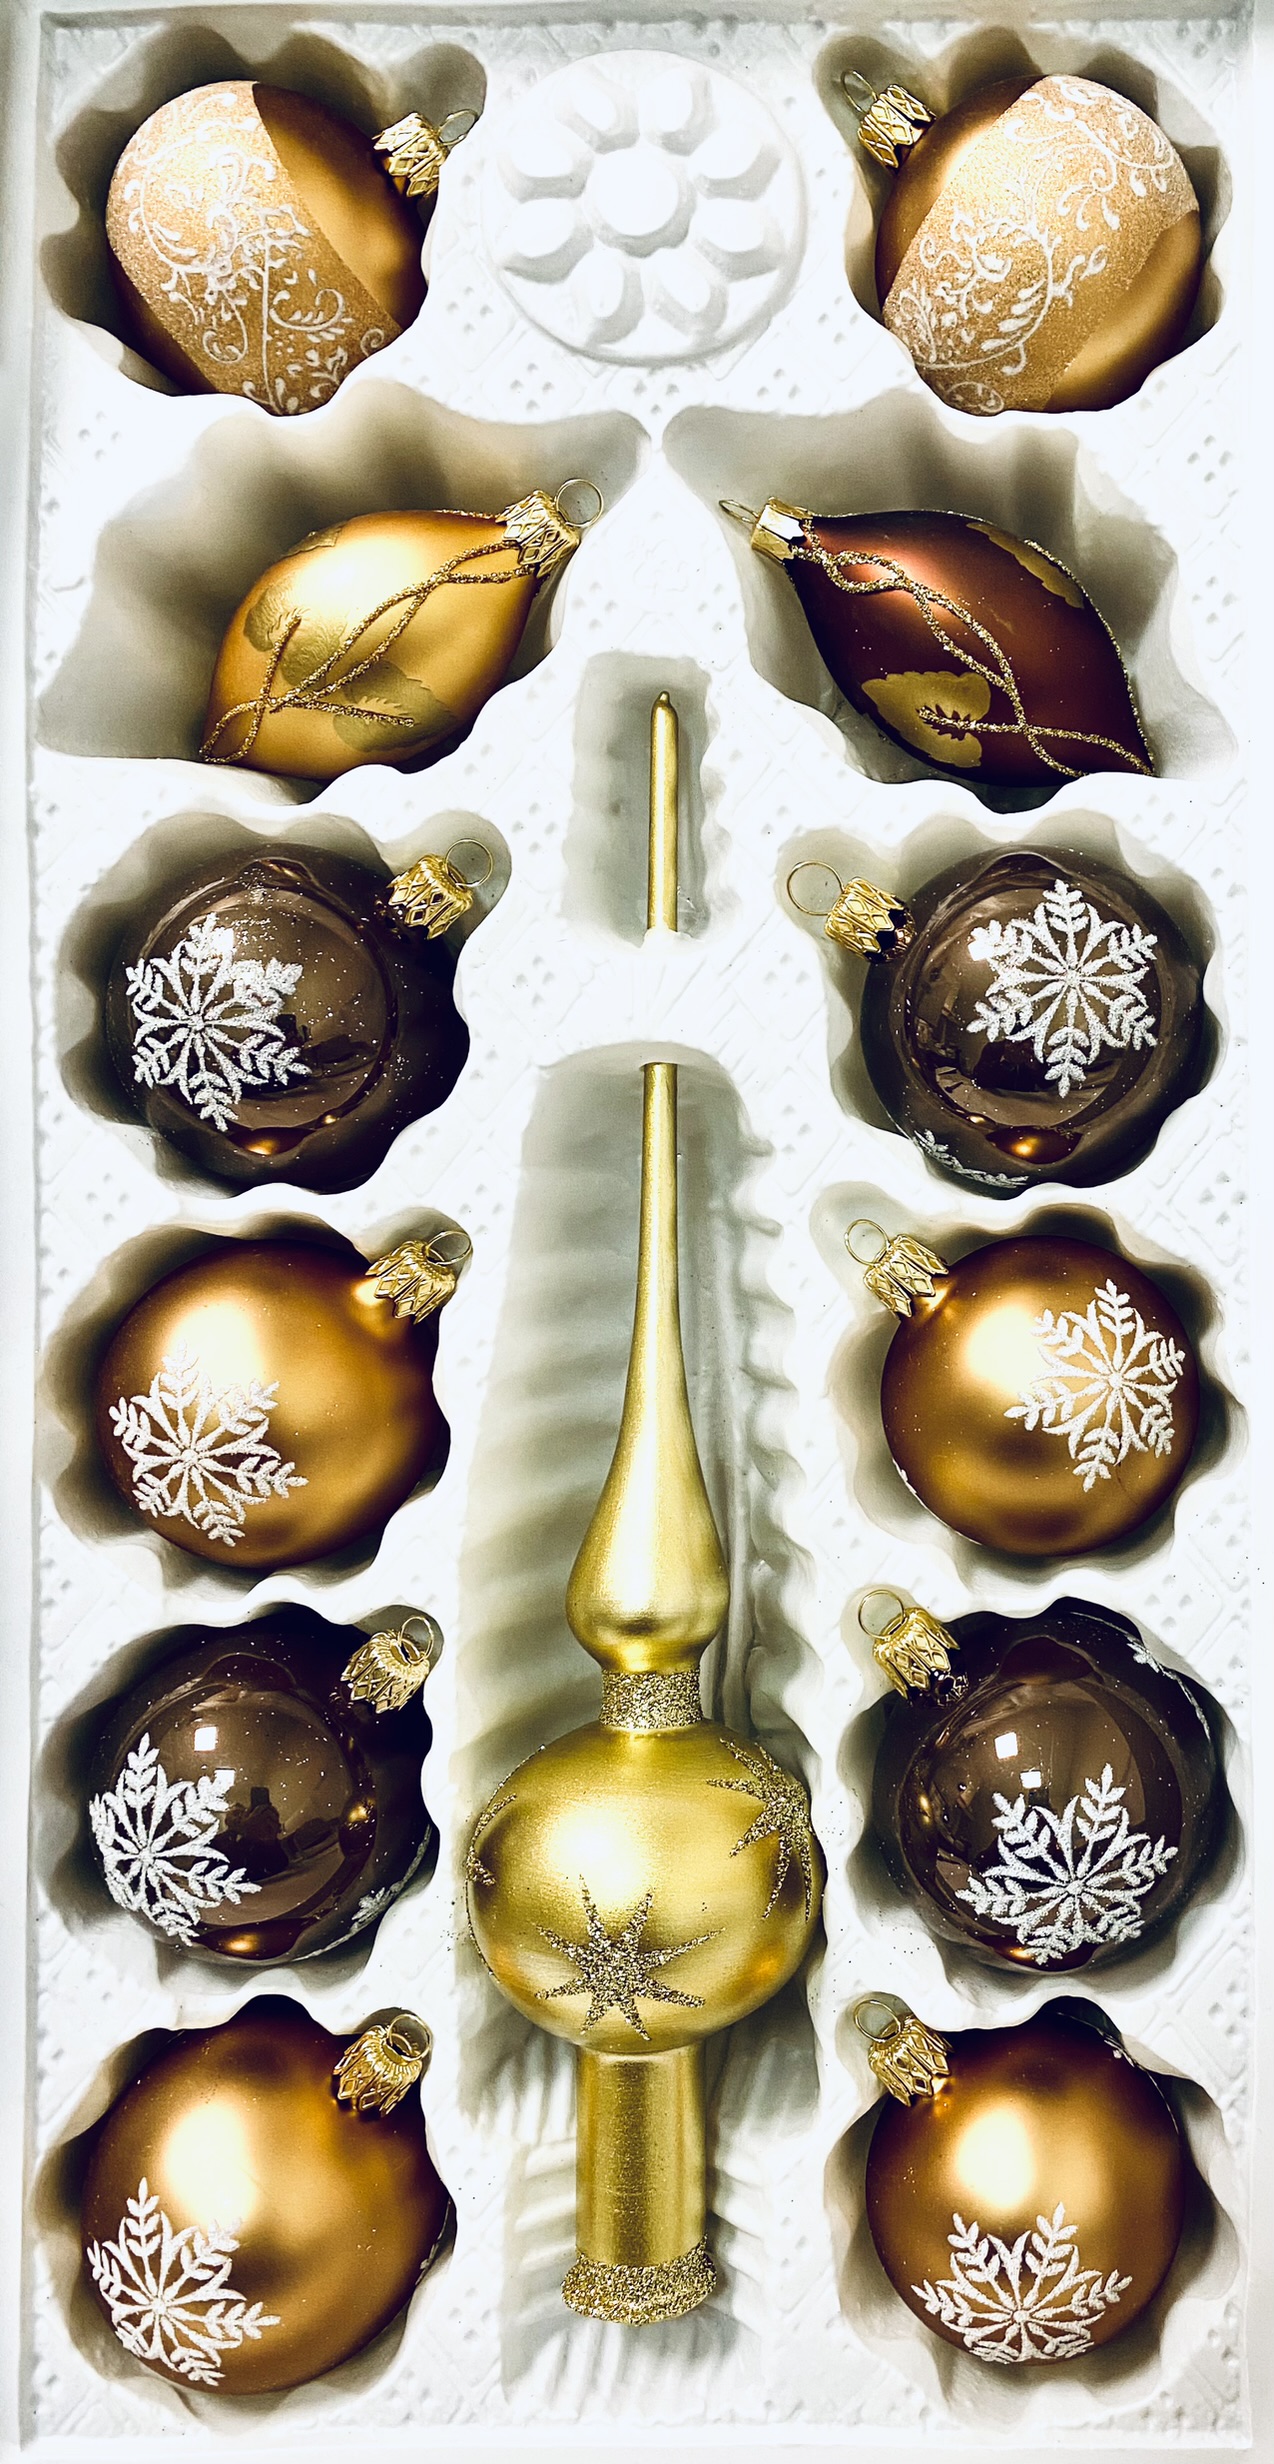 Irisa Zimní pohádka - kolekce Zlatého lesa: zlatá špice a koule plné vloček - hnědé,zlaté , 13 ks Balení: 13 ks, Barva: hnědá;zlatá, Velikost: 6 cm;…